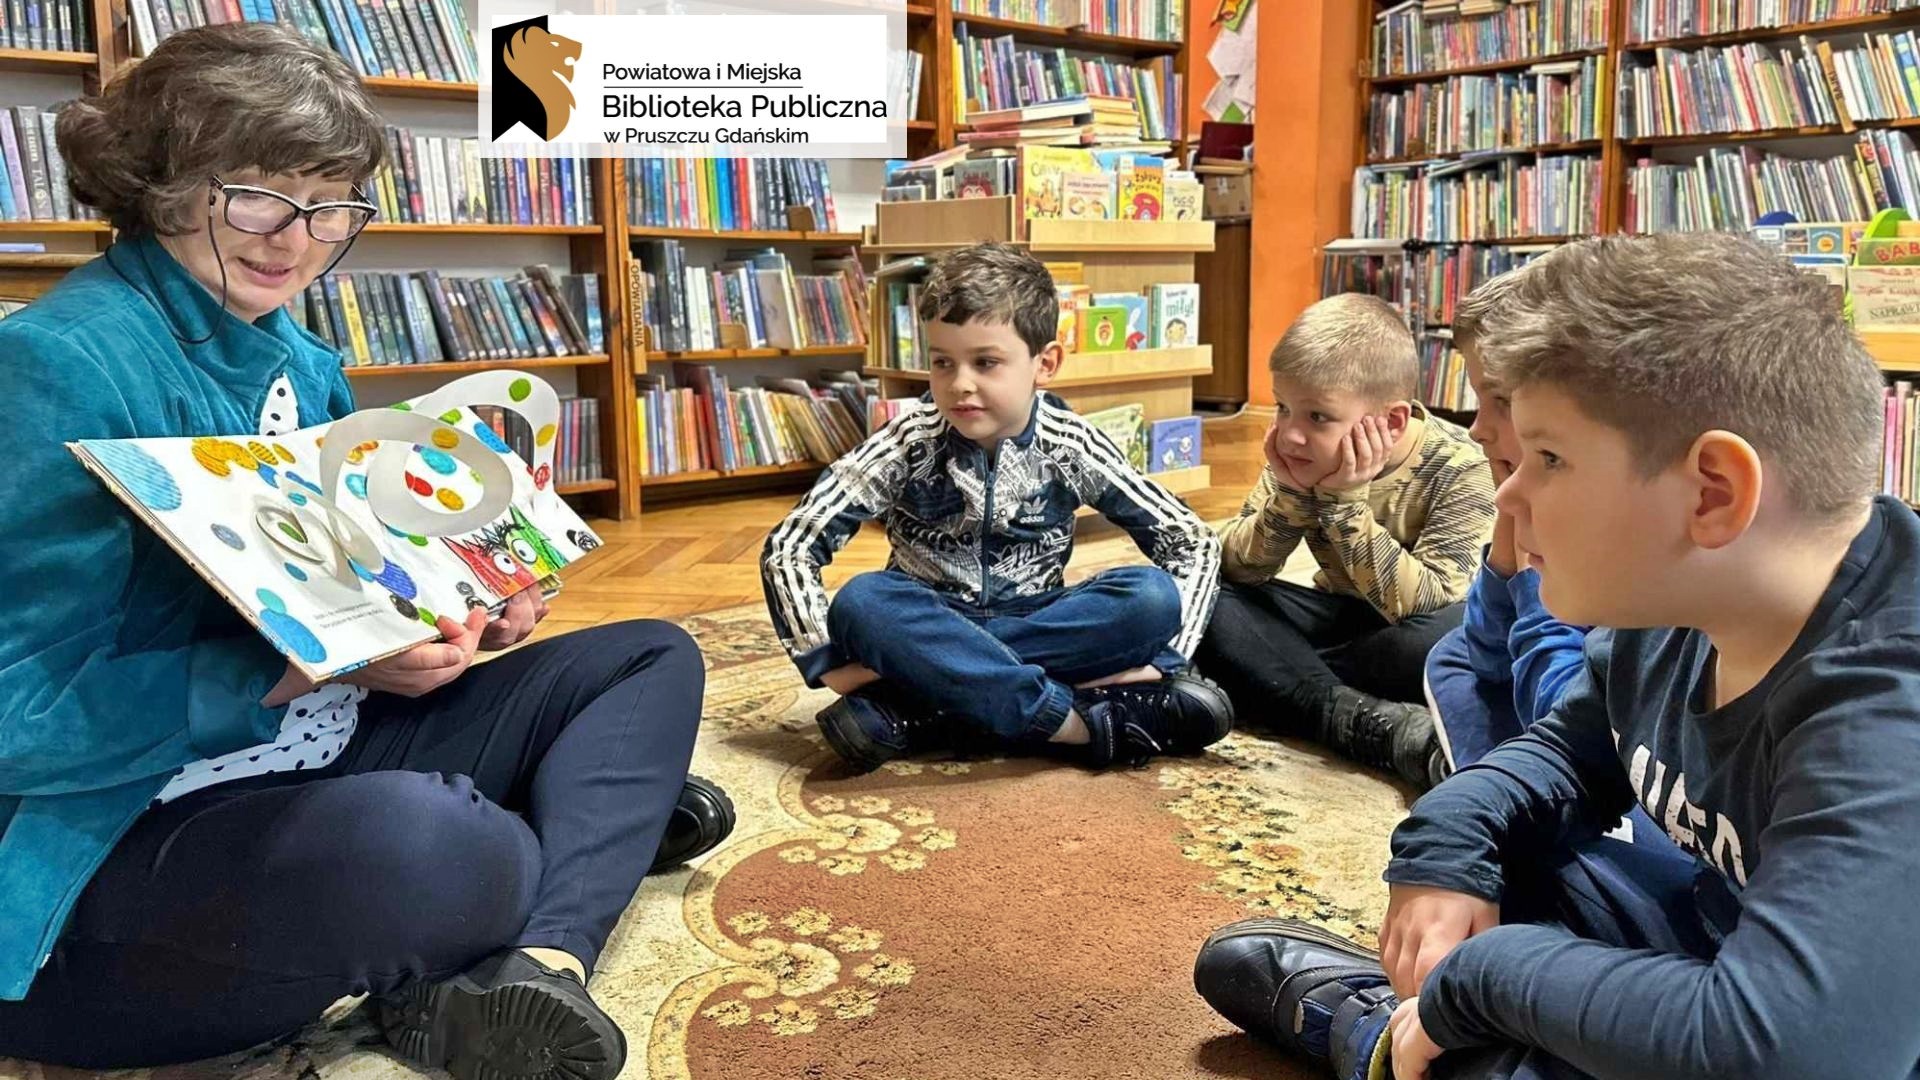 4 dzieci siedzi na dywanie w bibliotece. Dzieci patrzą na bibliotekarkę, która czyta książkę i pokazuje ilustracje. Ilustracja jest przestrzenna i wystaje z niej biały w kolorowe kropki zawijas.